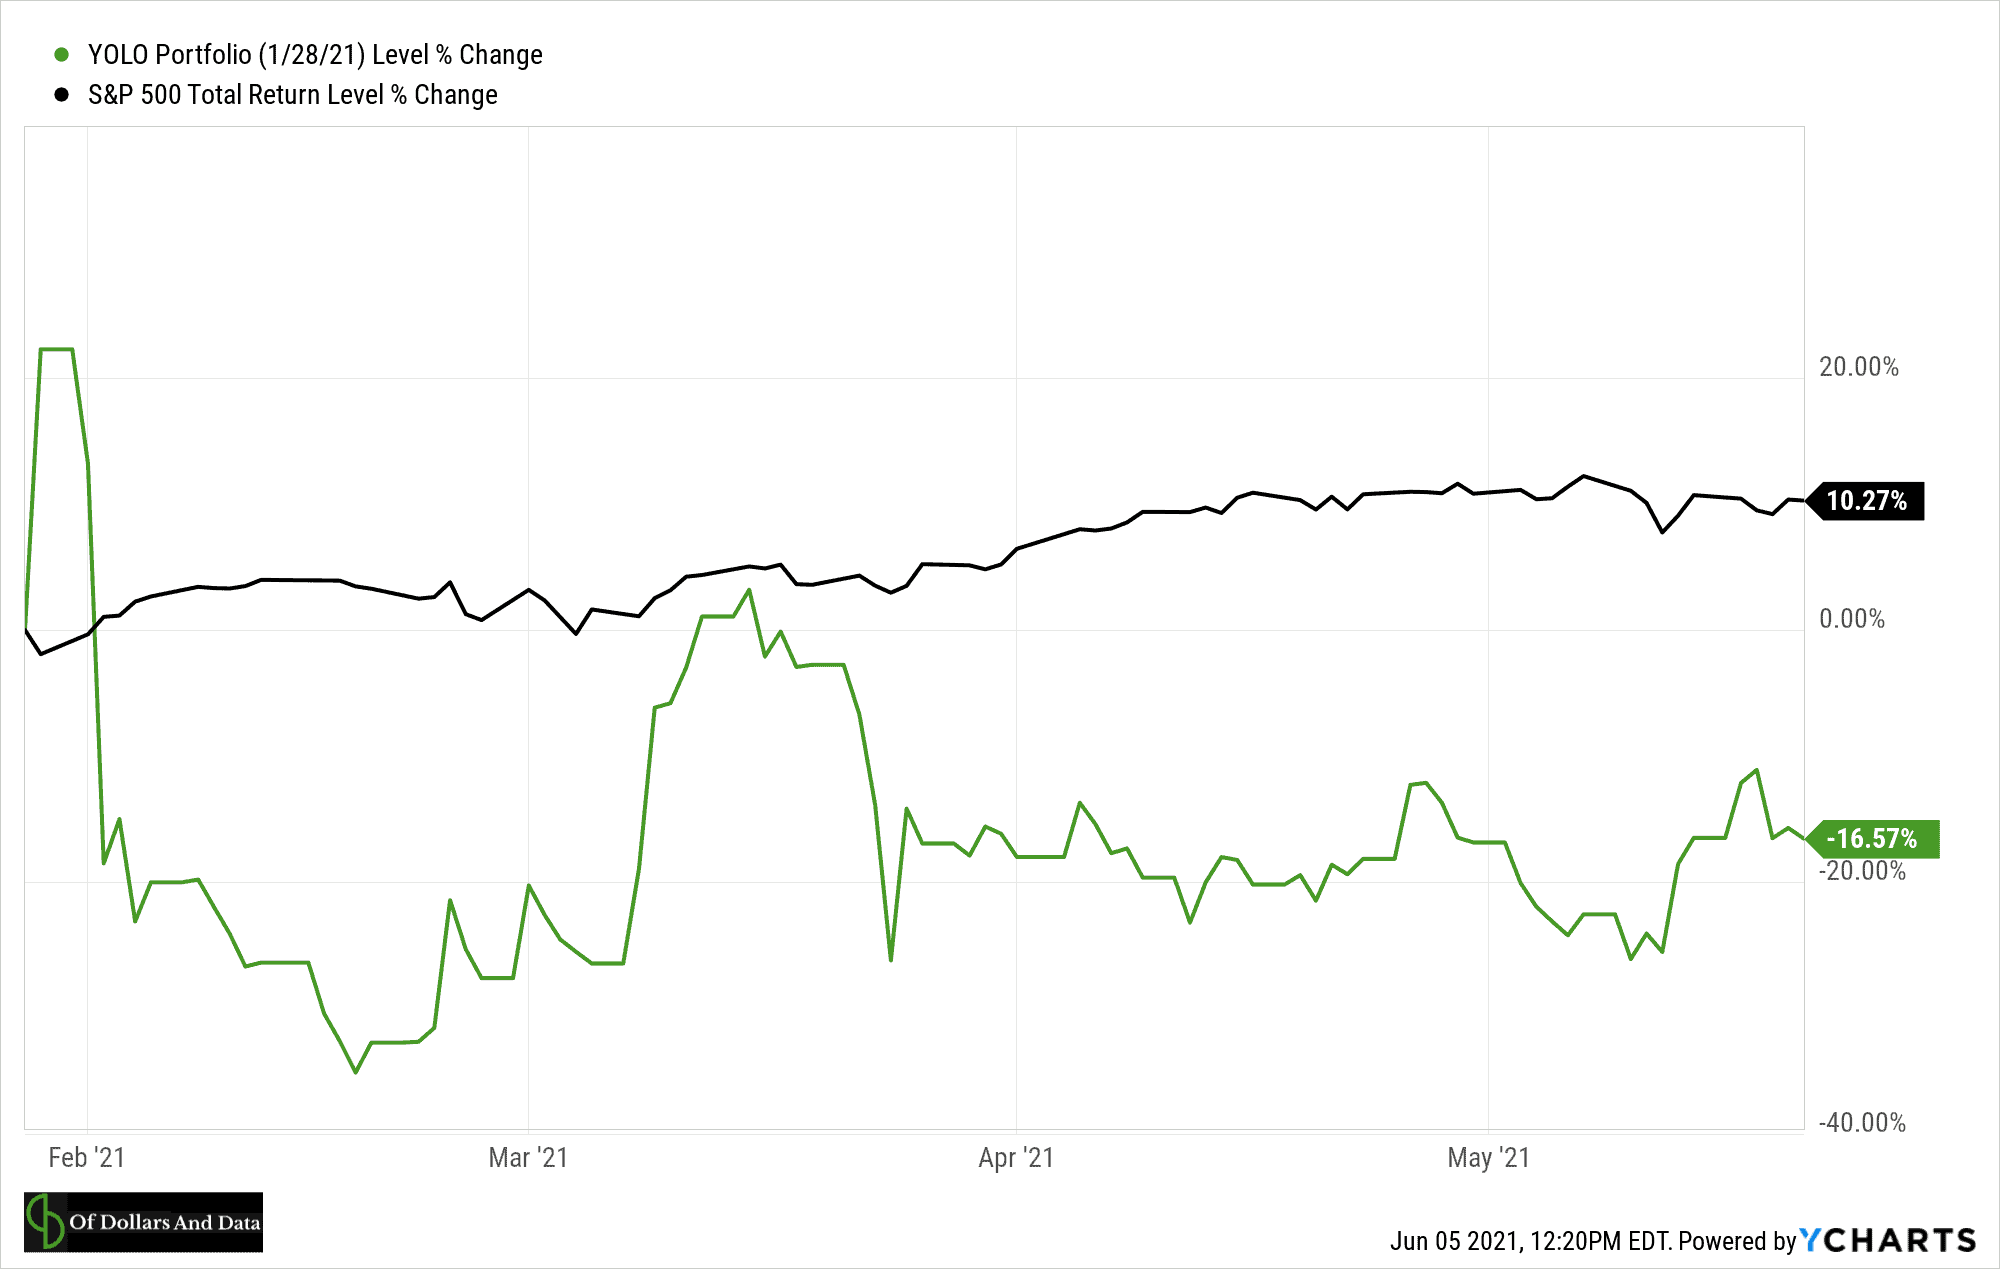 YOLO portfolio vs S&P 500 in early 2021.